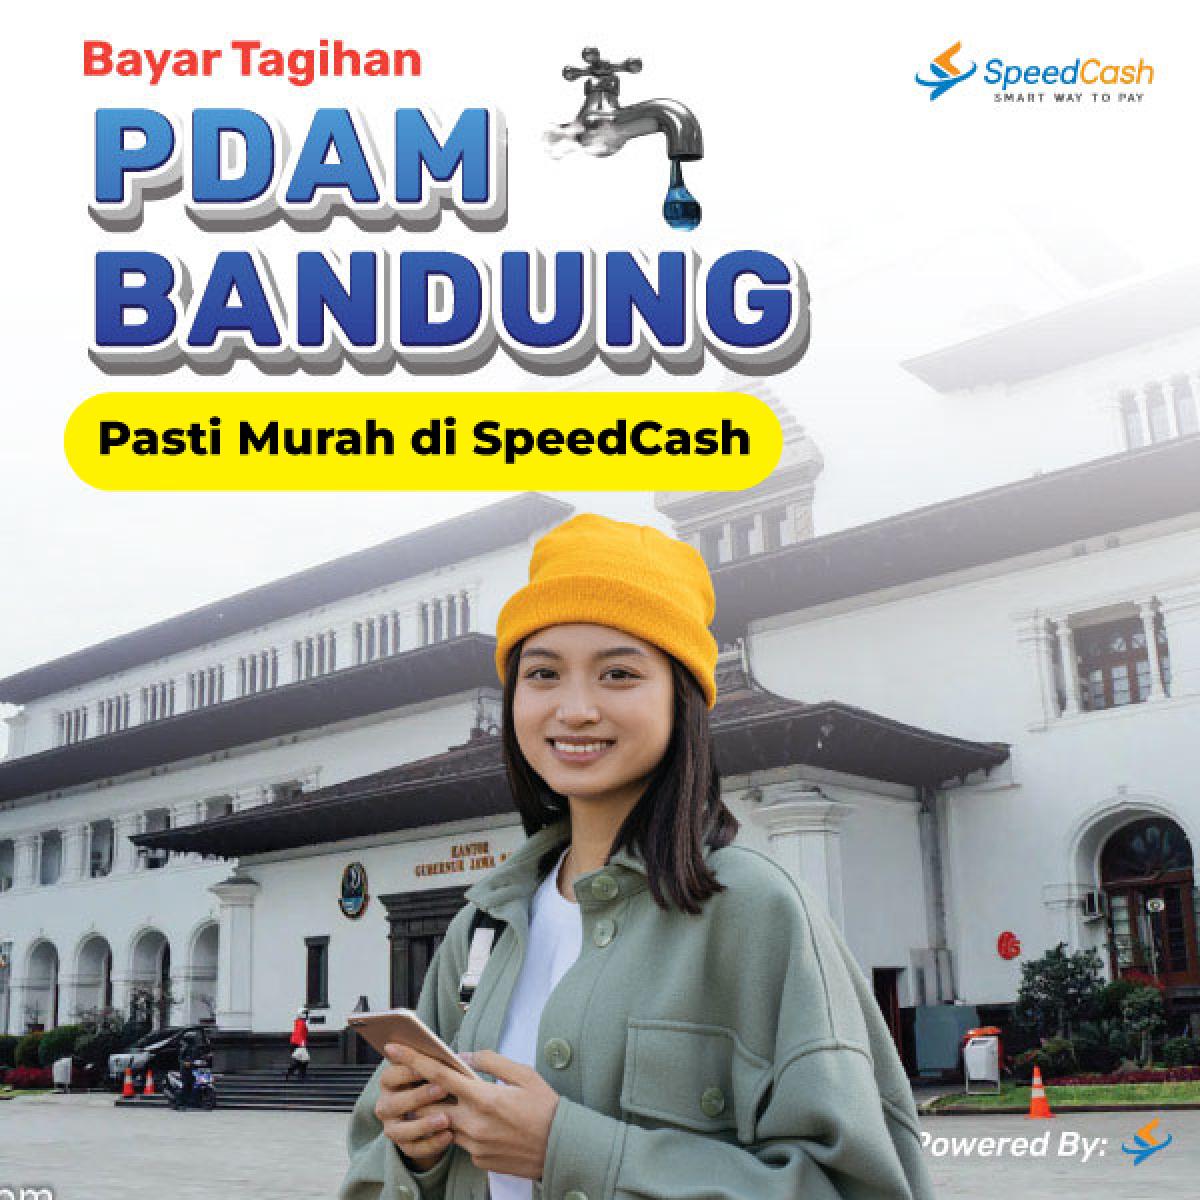 Cek Tagihan PDAM Bandung dan Bayar Online - SpeedCash